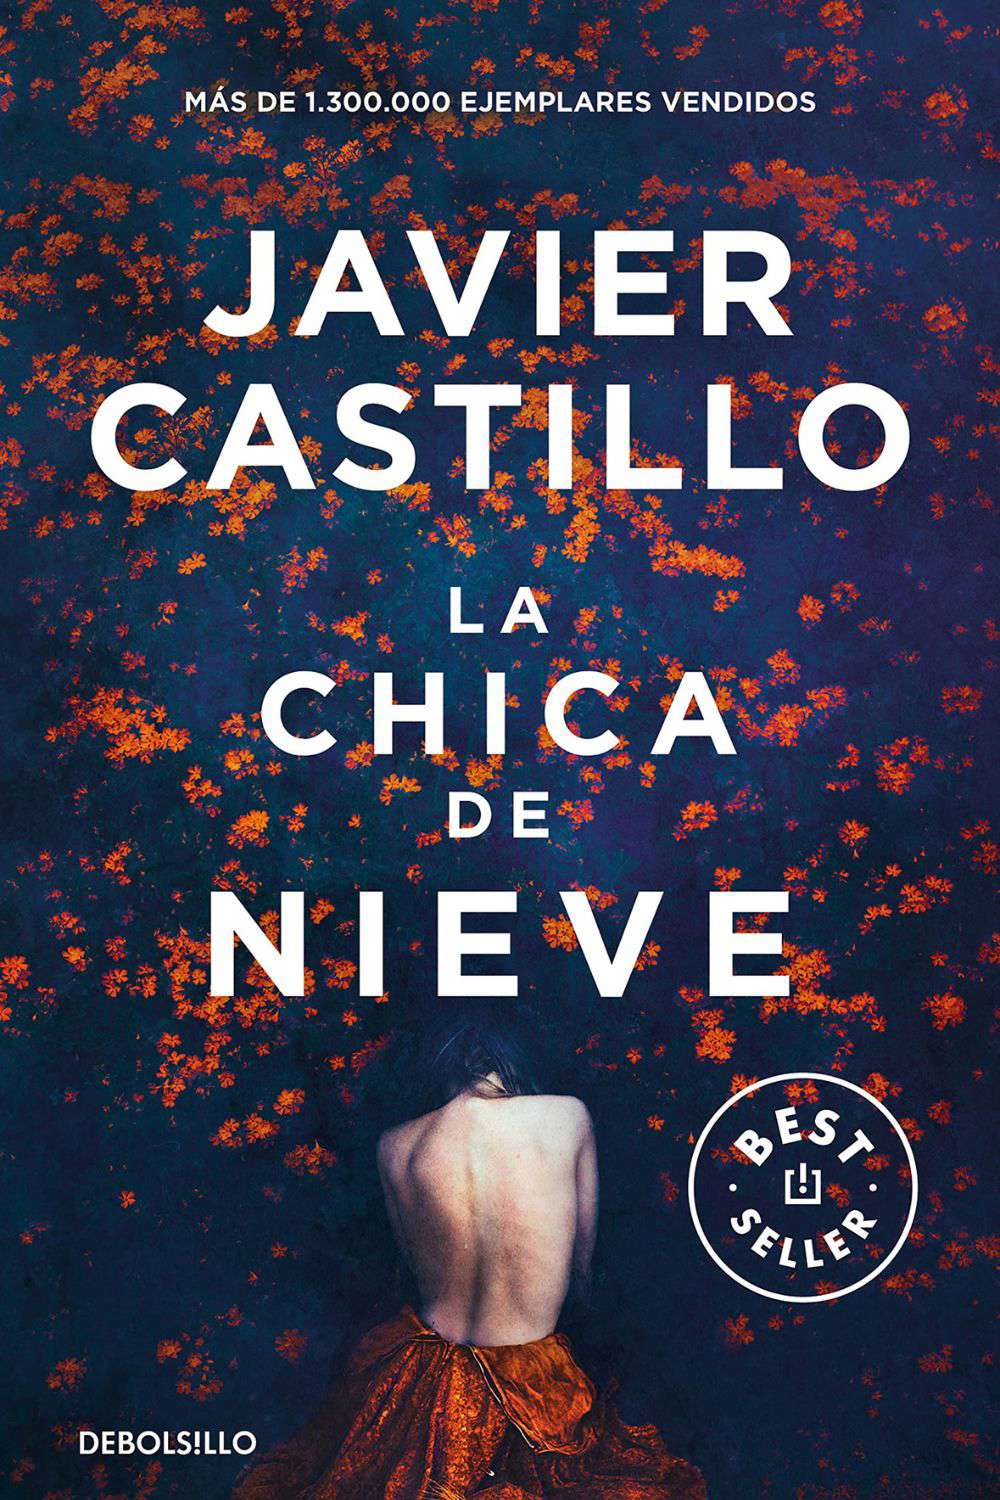 'La chica de nieve' de Javier Castillo